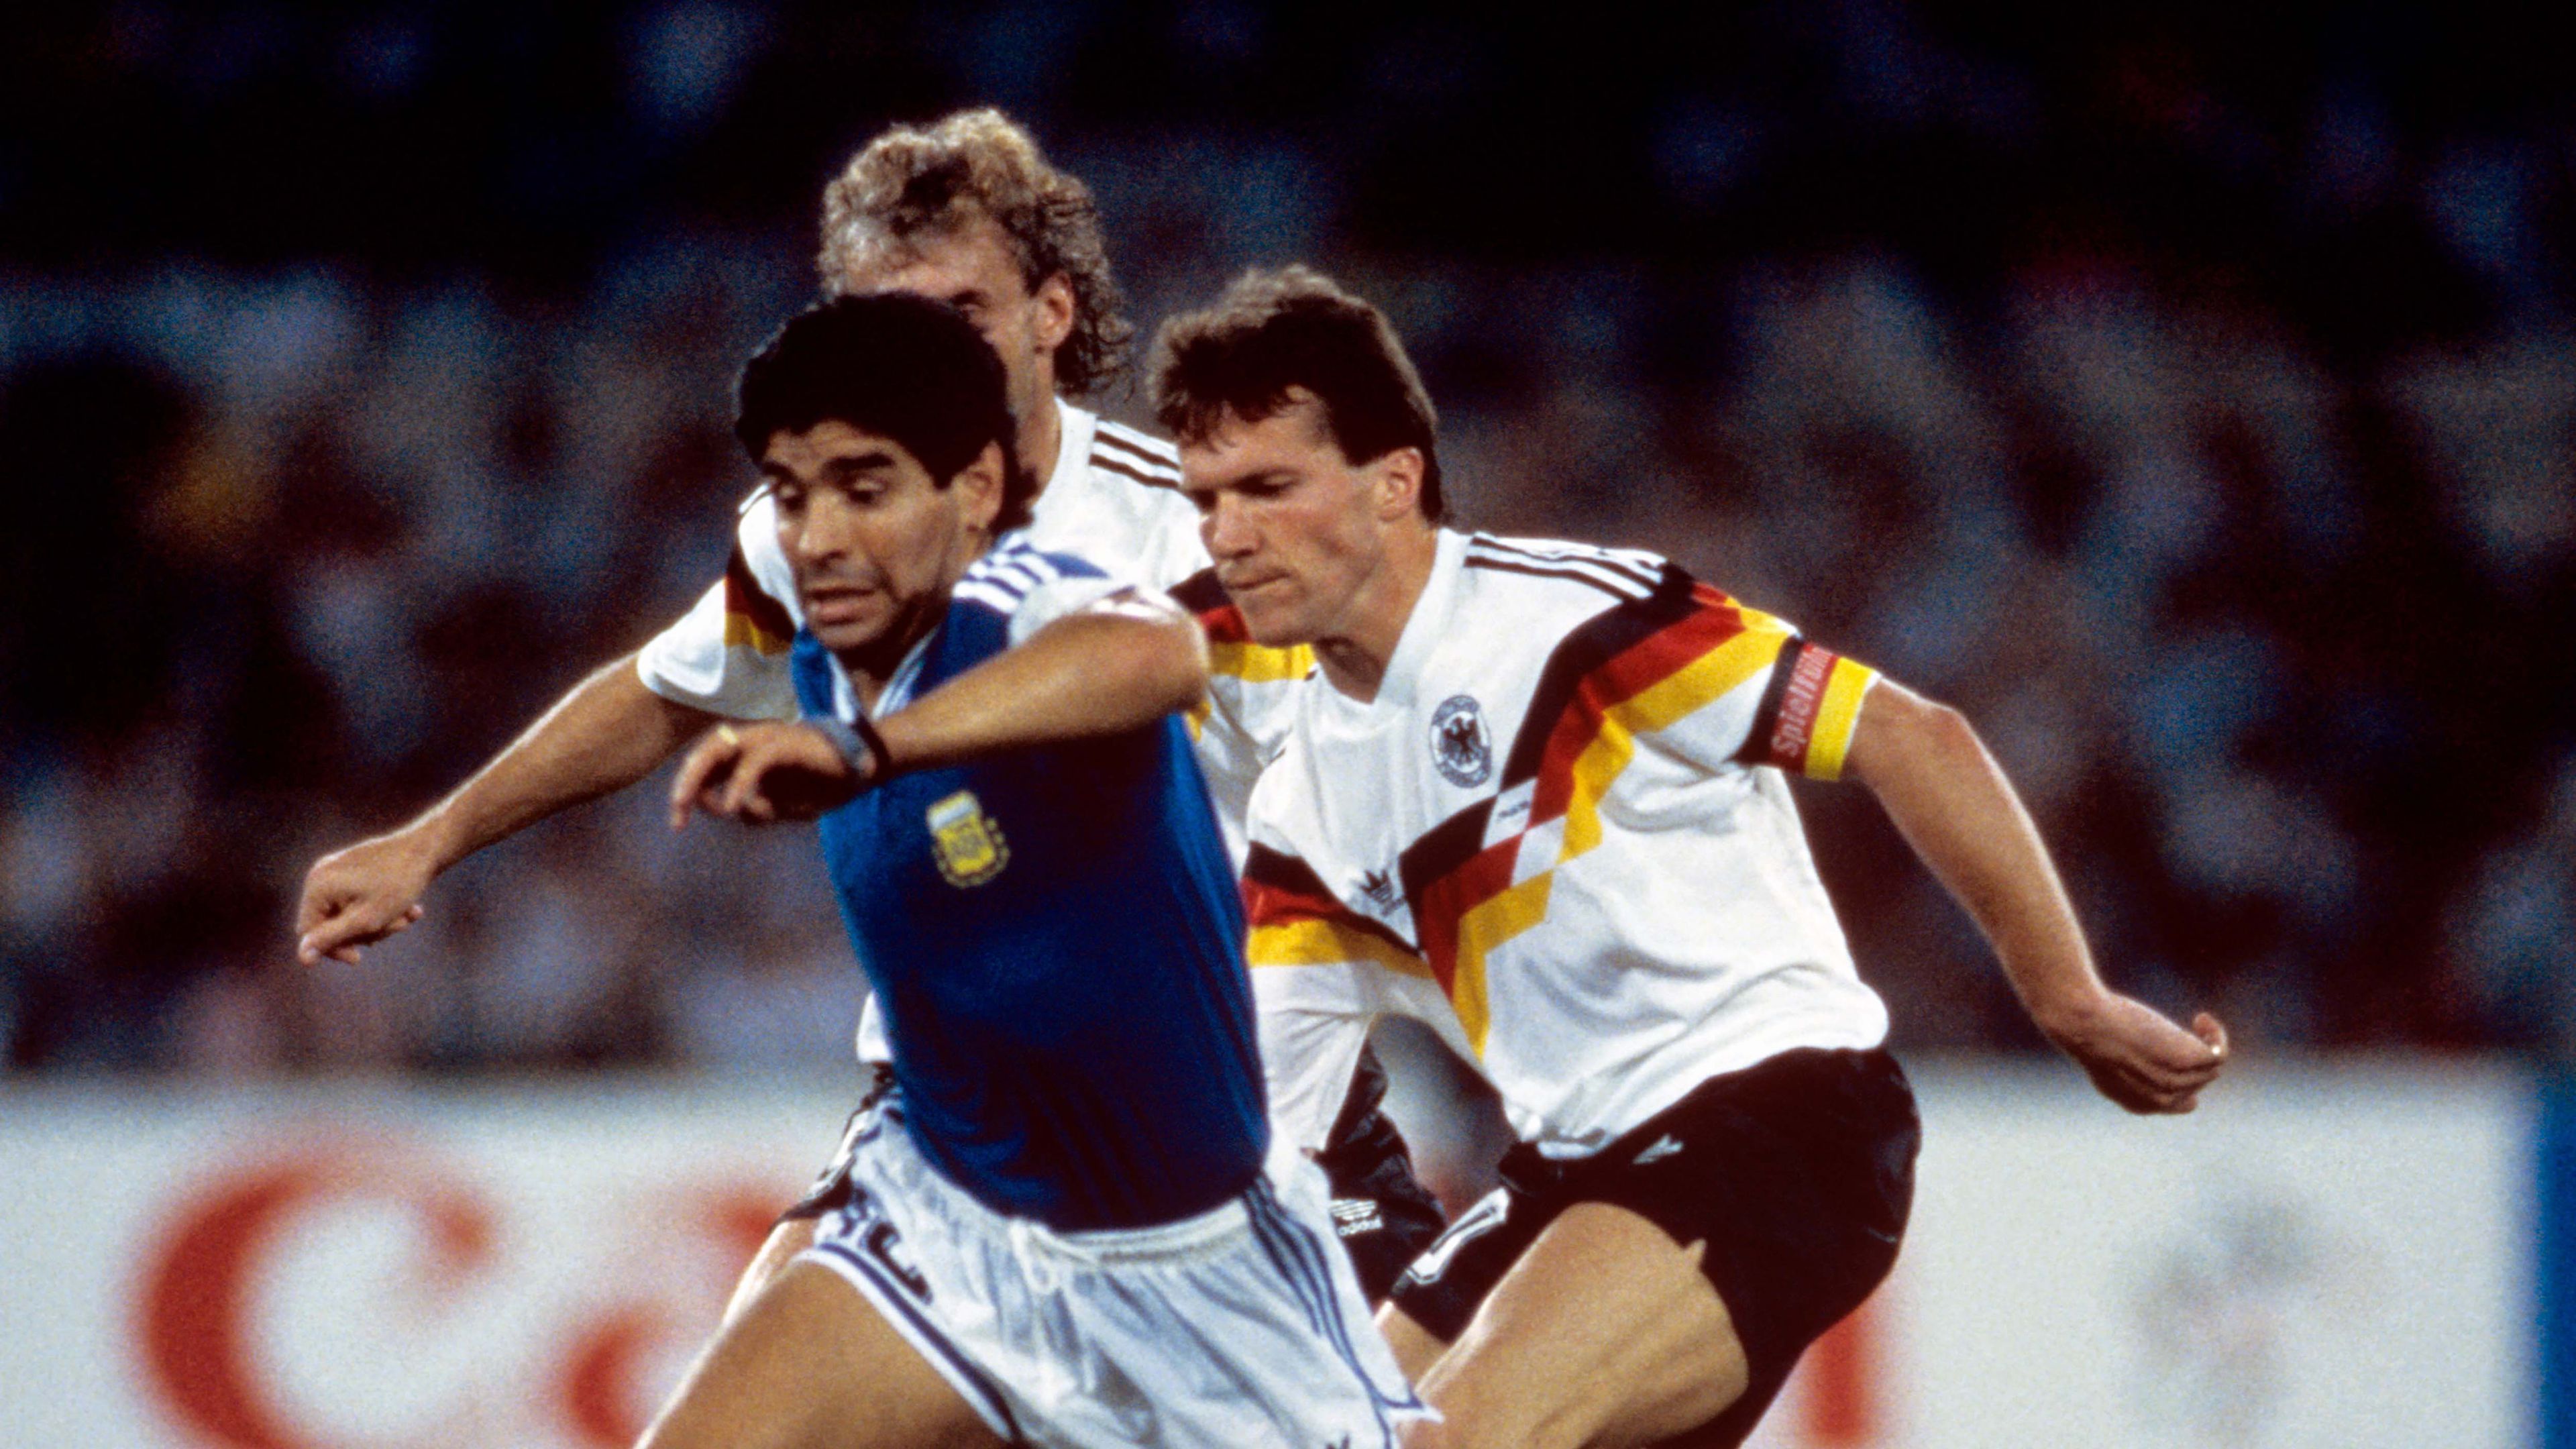 Két világklasszis: Diego Maradona (kékben) és Lothar Mathäus az 1990-es világbajnoki döntőben (Fotó: Gettyimages)